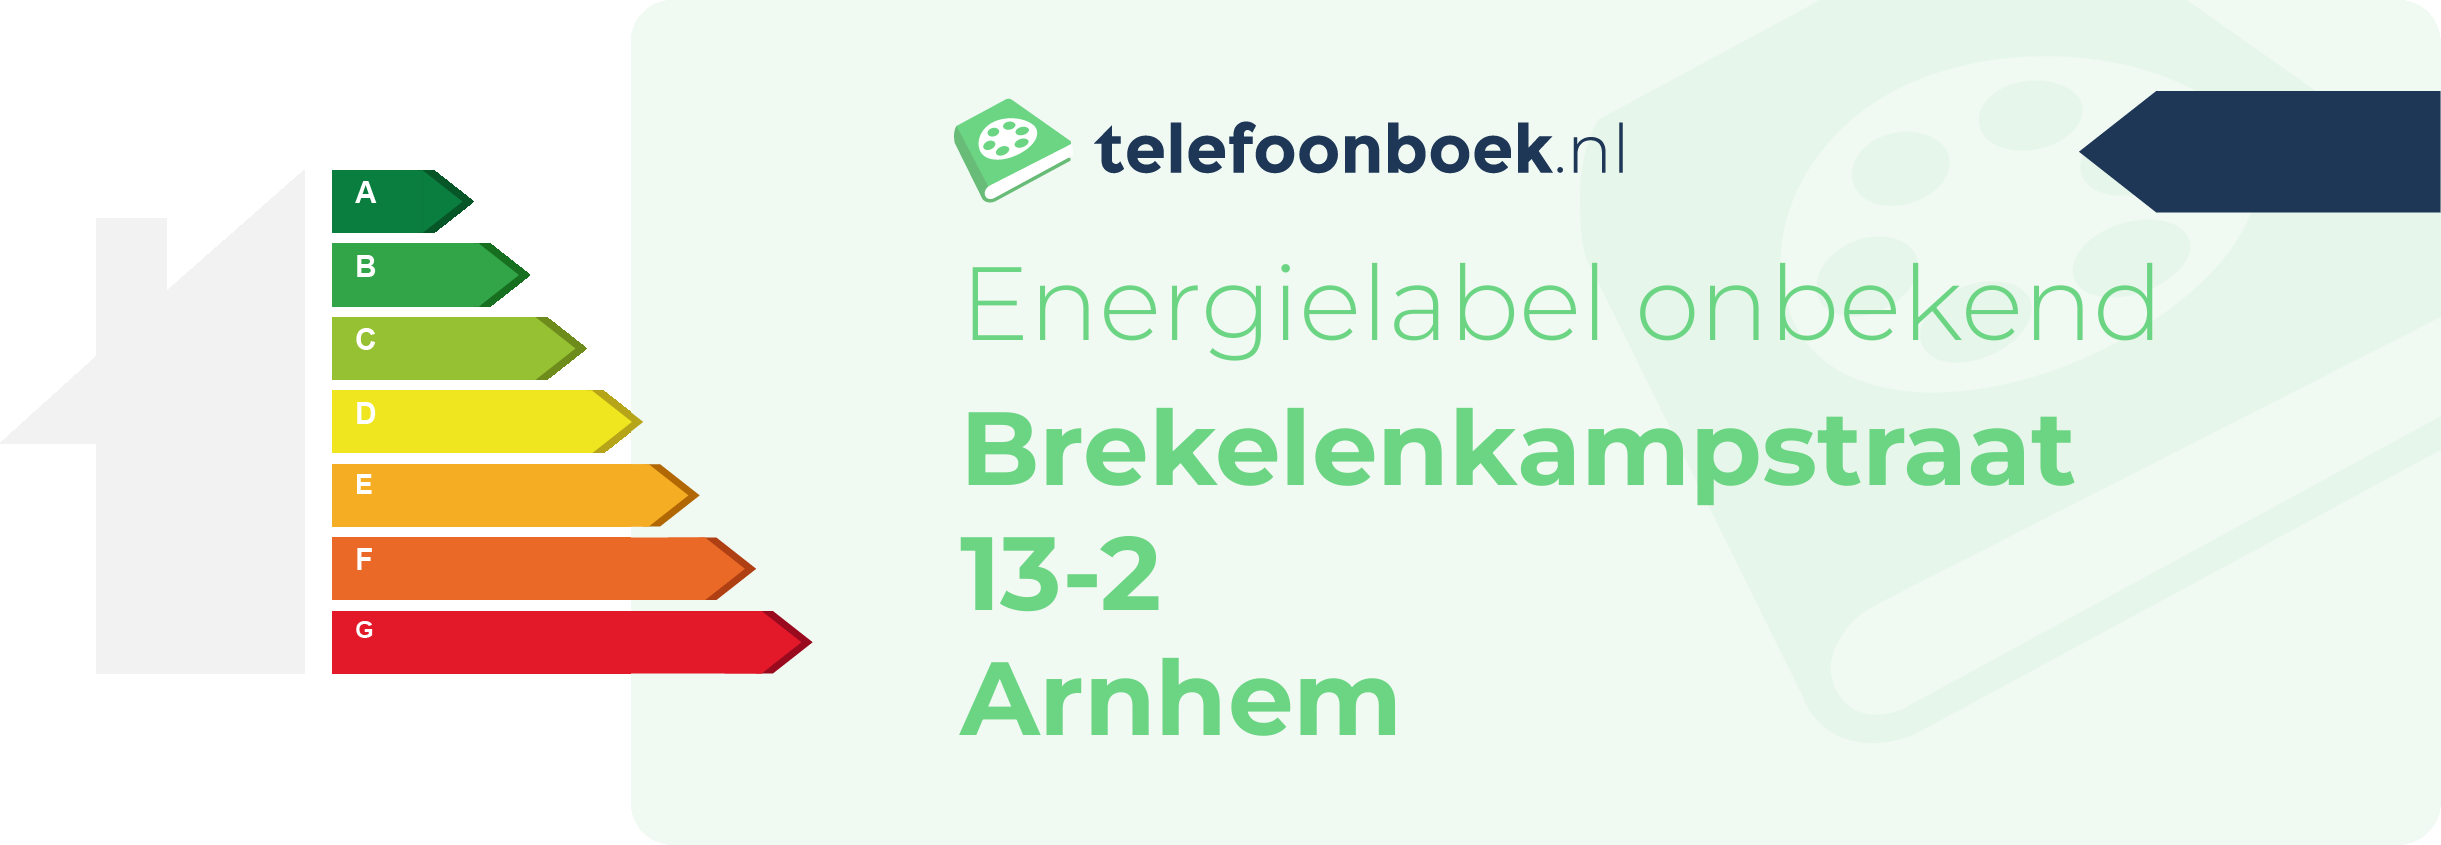 Energielabel Brekelenkampstraat 13-2 Arnhem